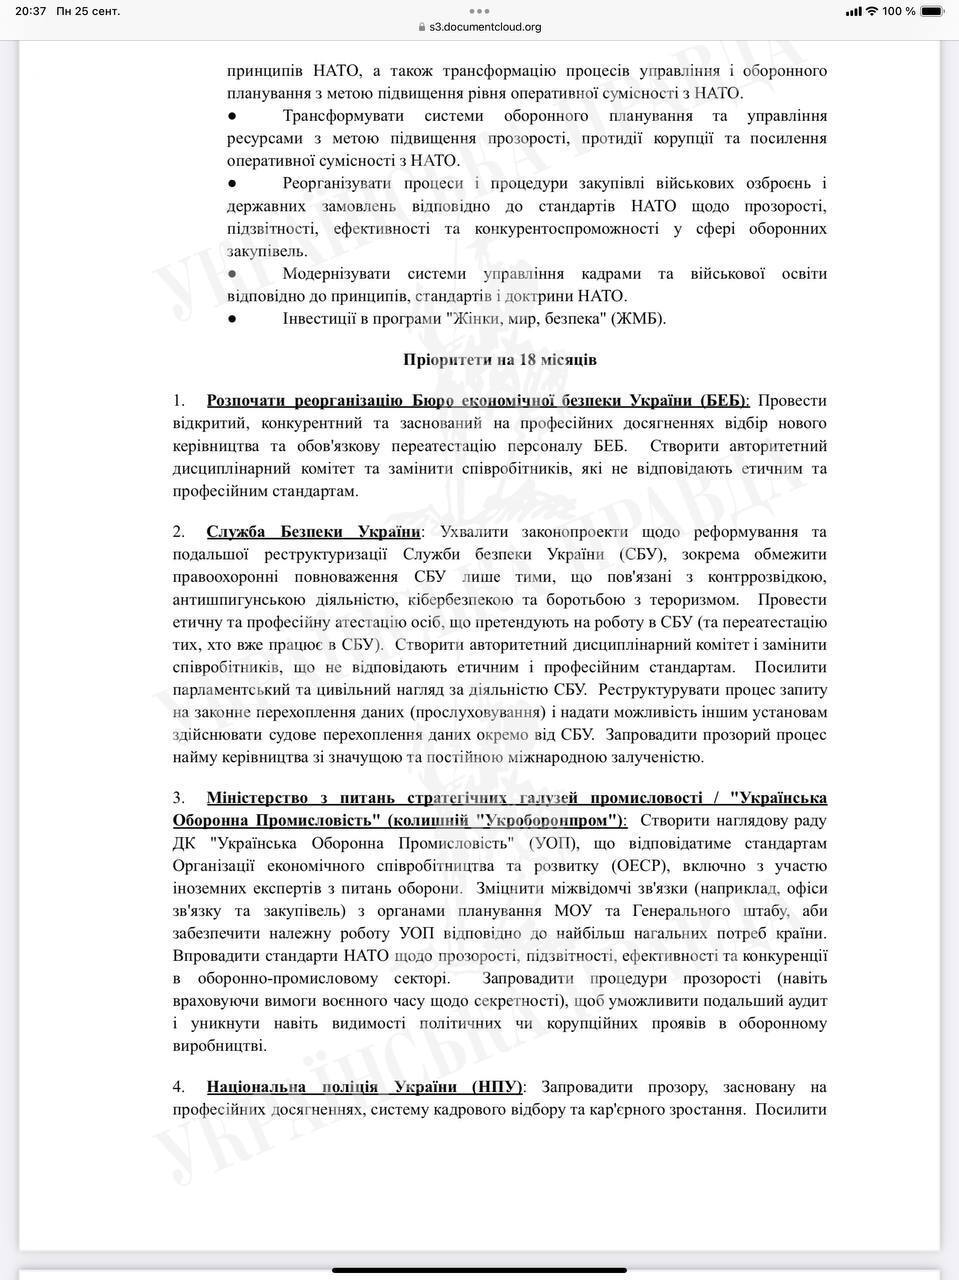 Украинские власти получили письмо с перечнем реформ, которые должны сделать для дальнейшего получения помощи от США: подробности